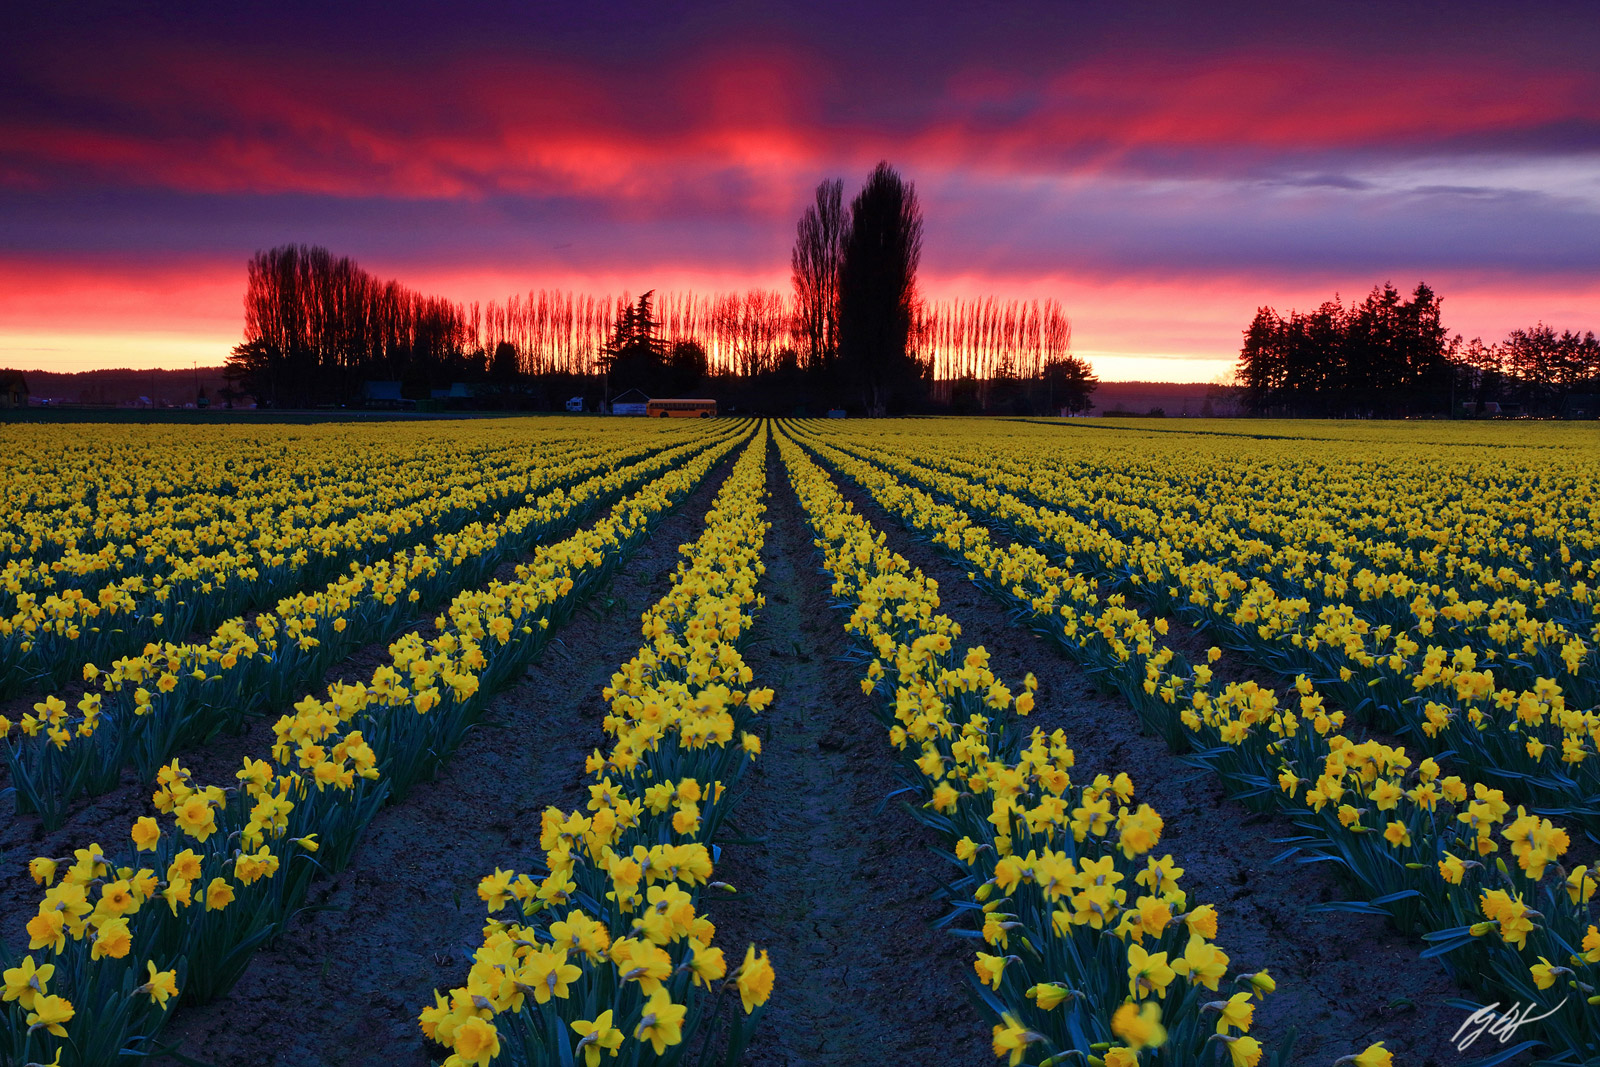 Sunset in the Daffodil Fields,  Roozengaarde Fields in Skagit Valley in Washington